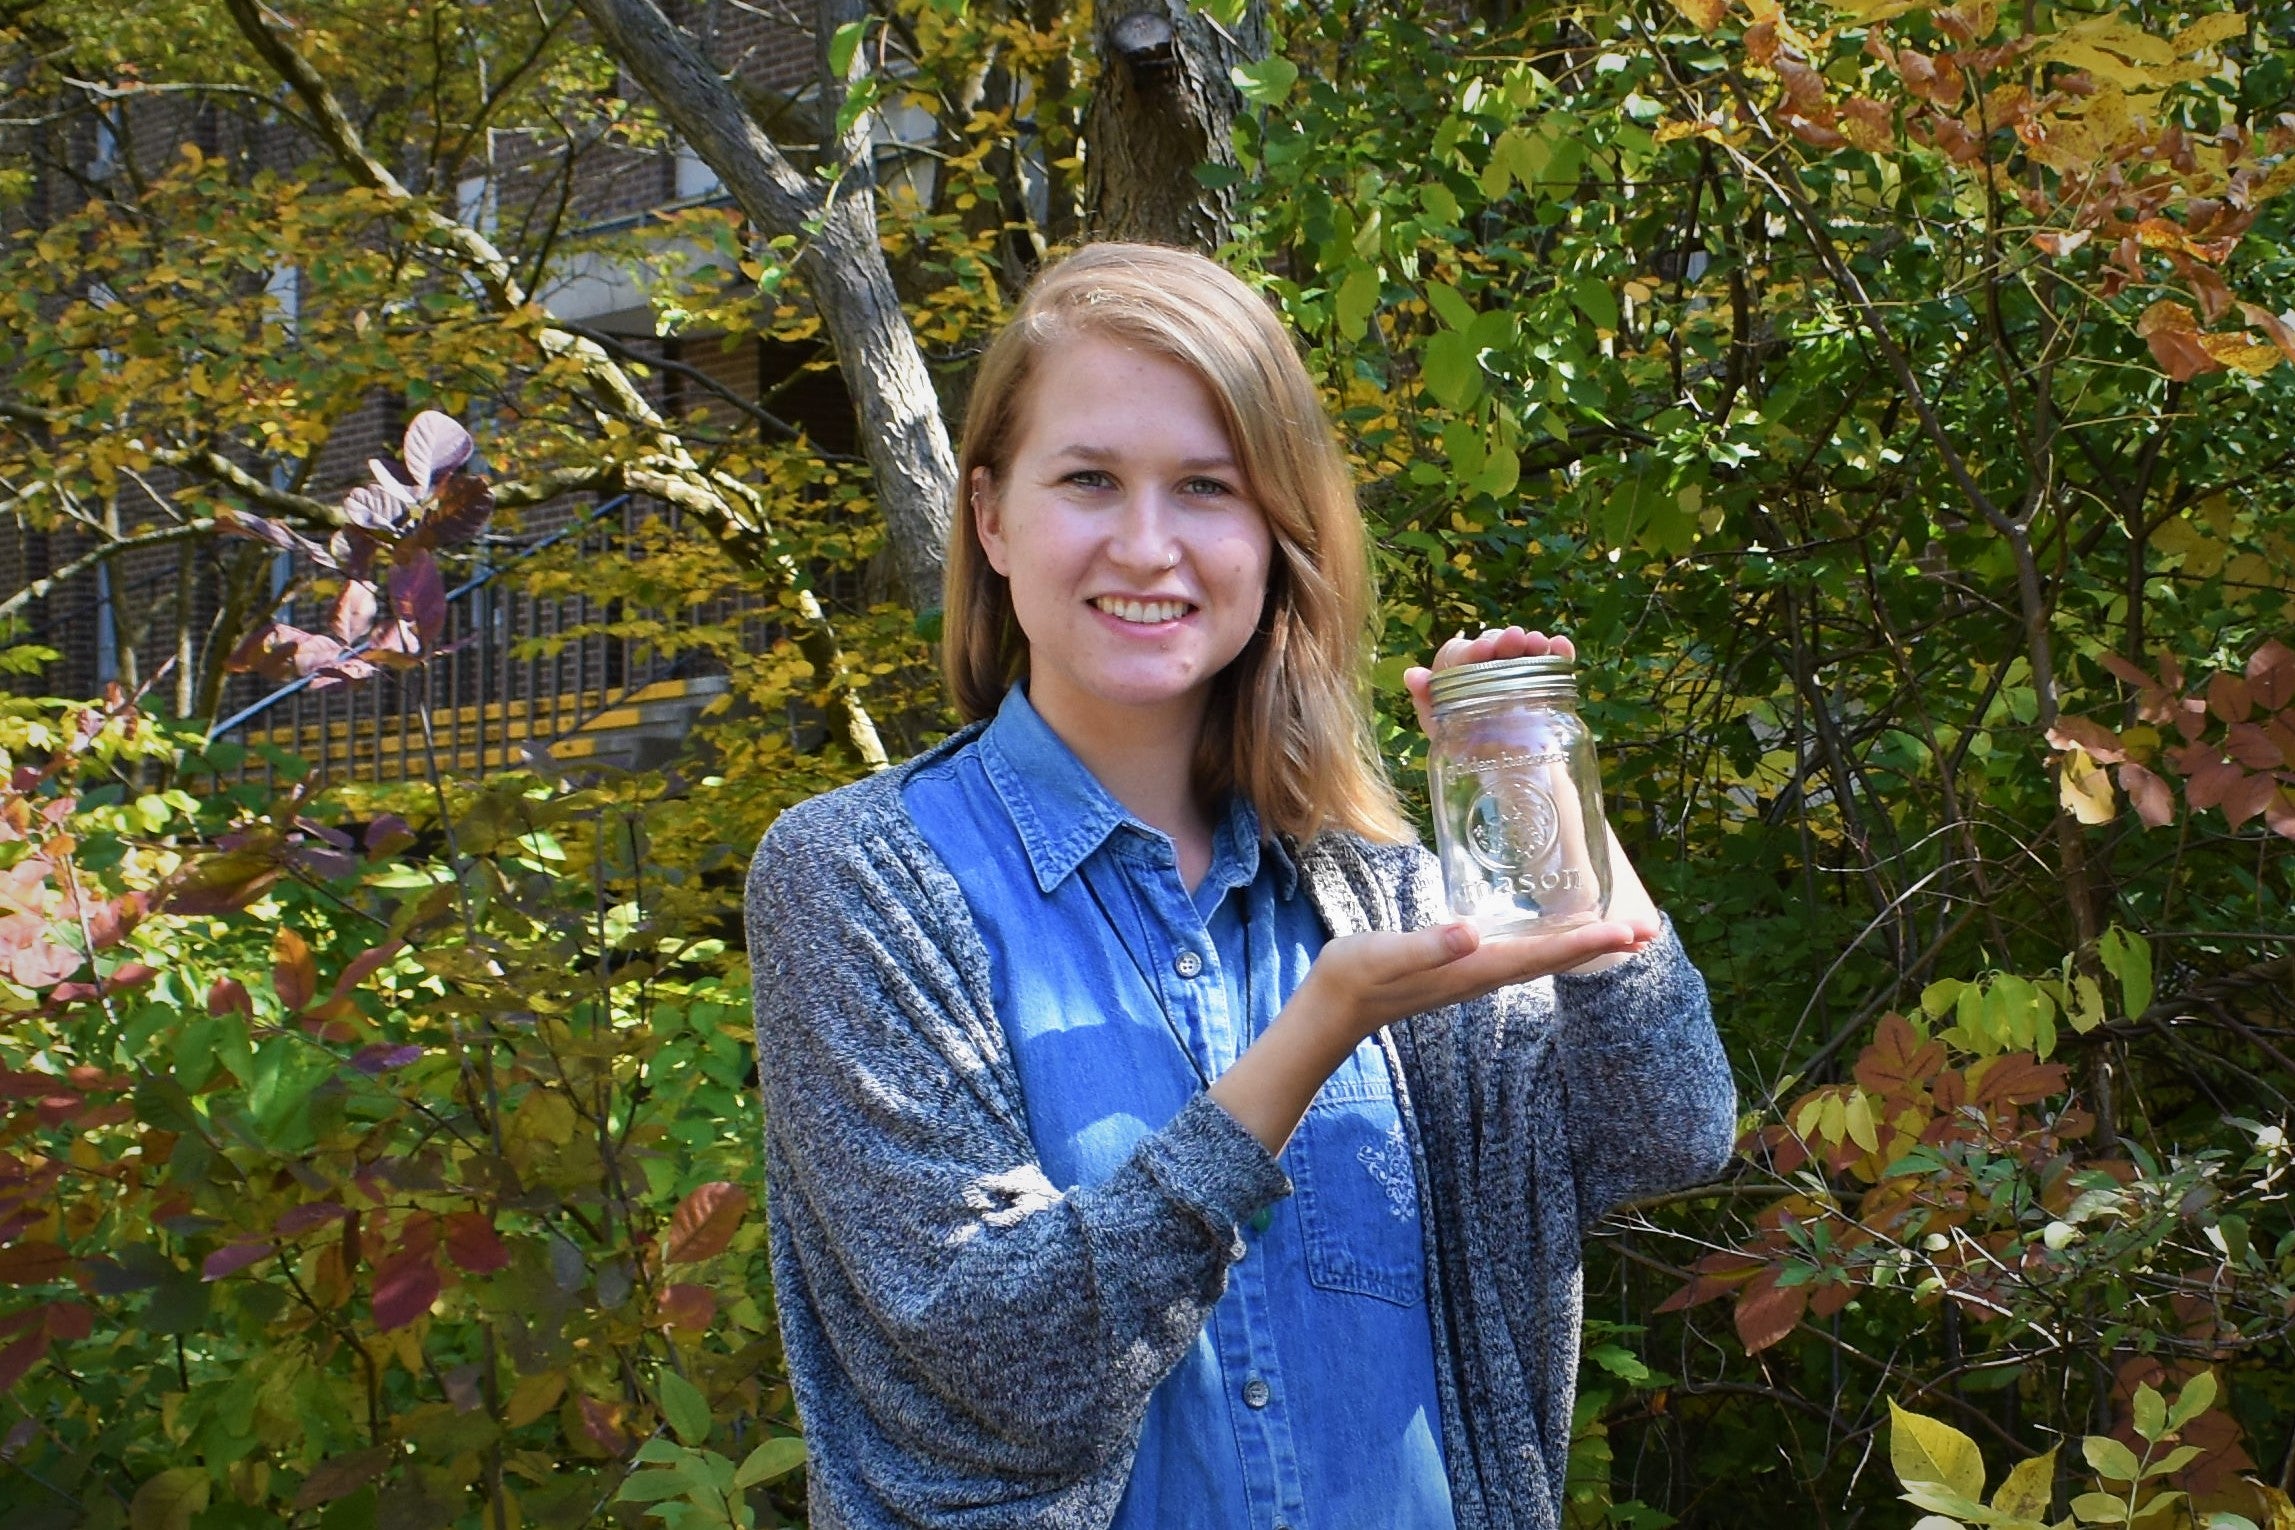 Beth Eden with her mason jar